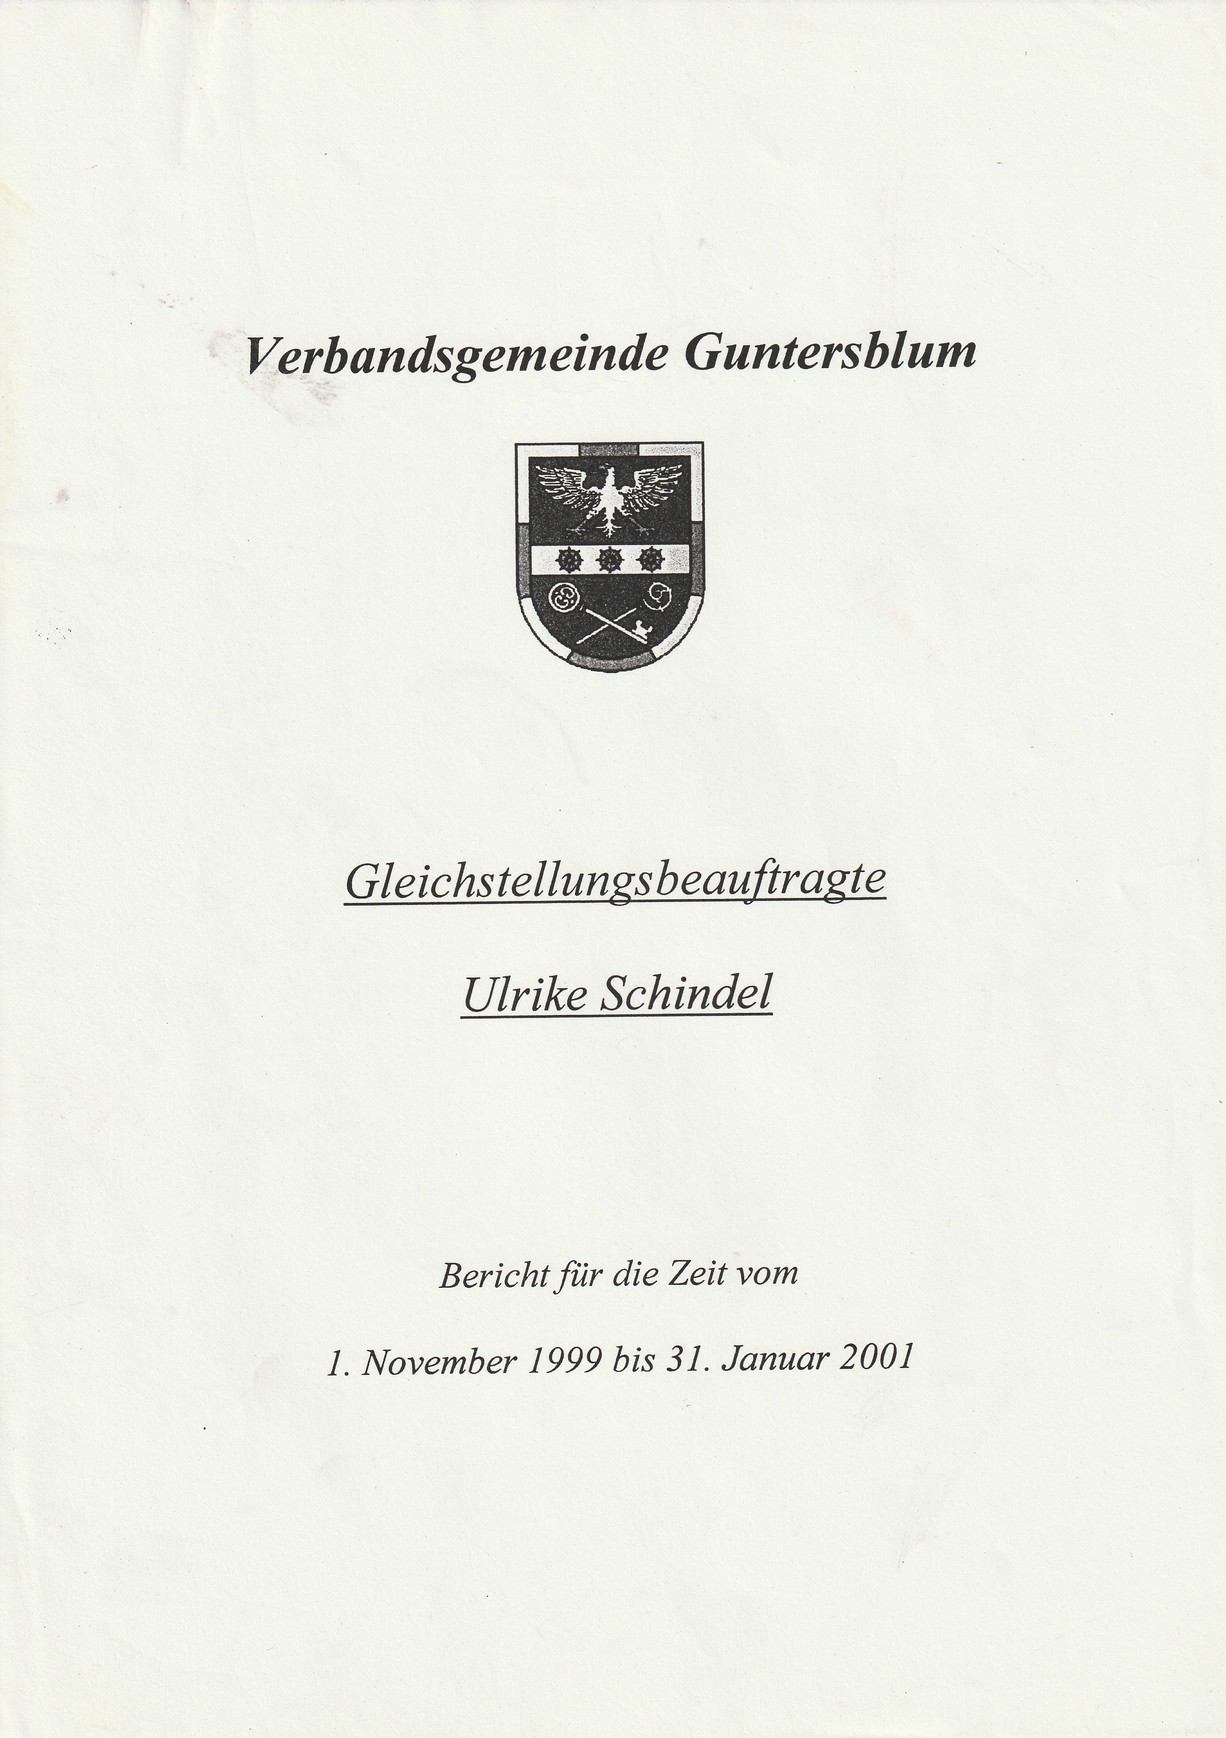 Bericht der Gleichstellungsbeauftragten vom 1. Nov. 1999 bis 31. Jan. 2001 (Kulturverein Guntersblum CC BY-NC-SA)